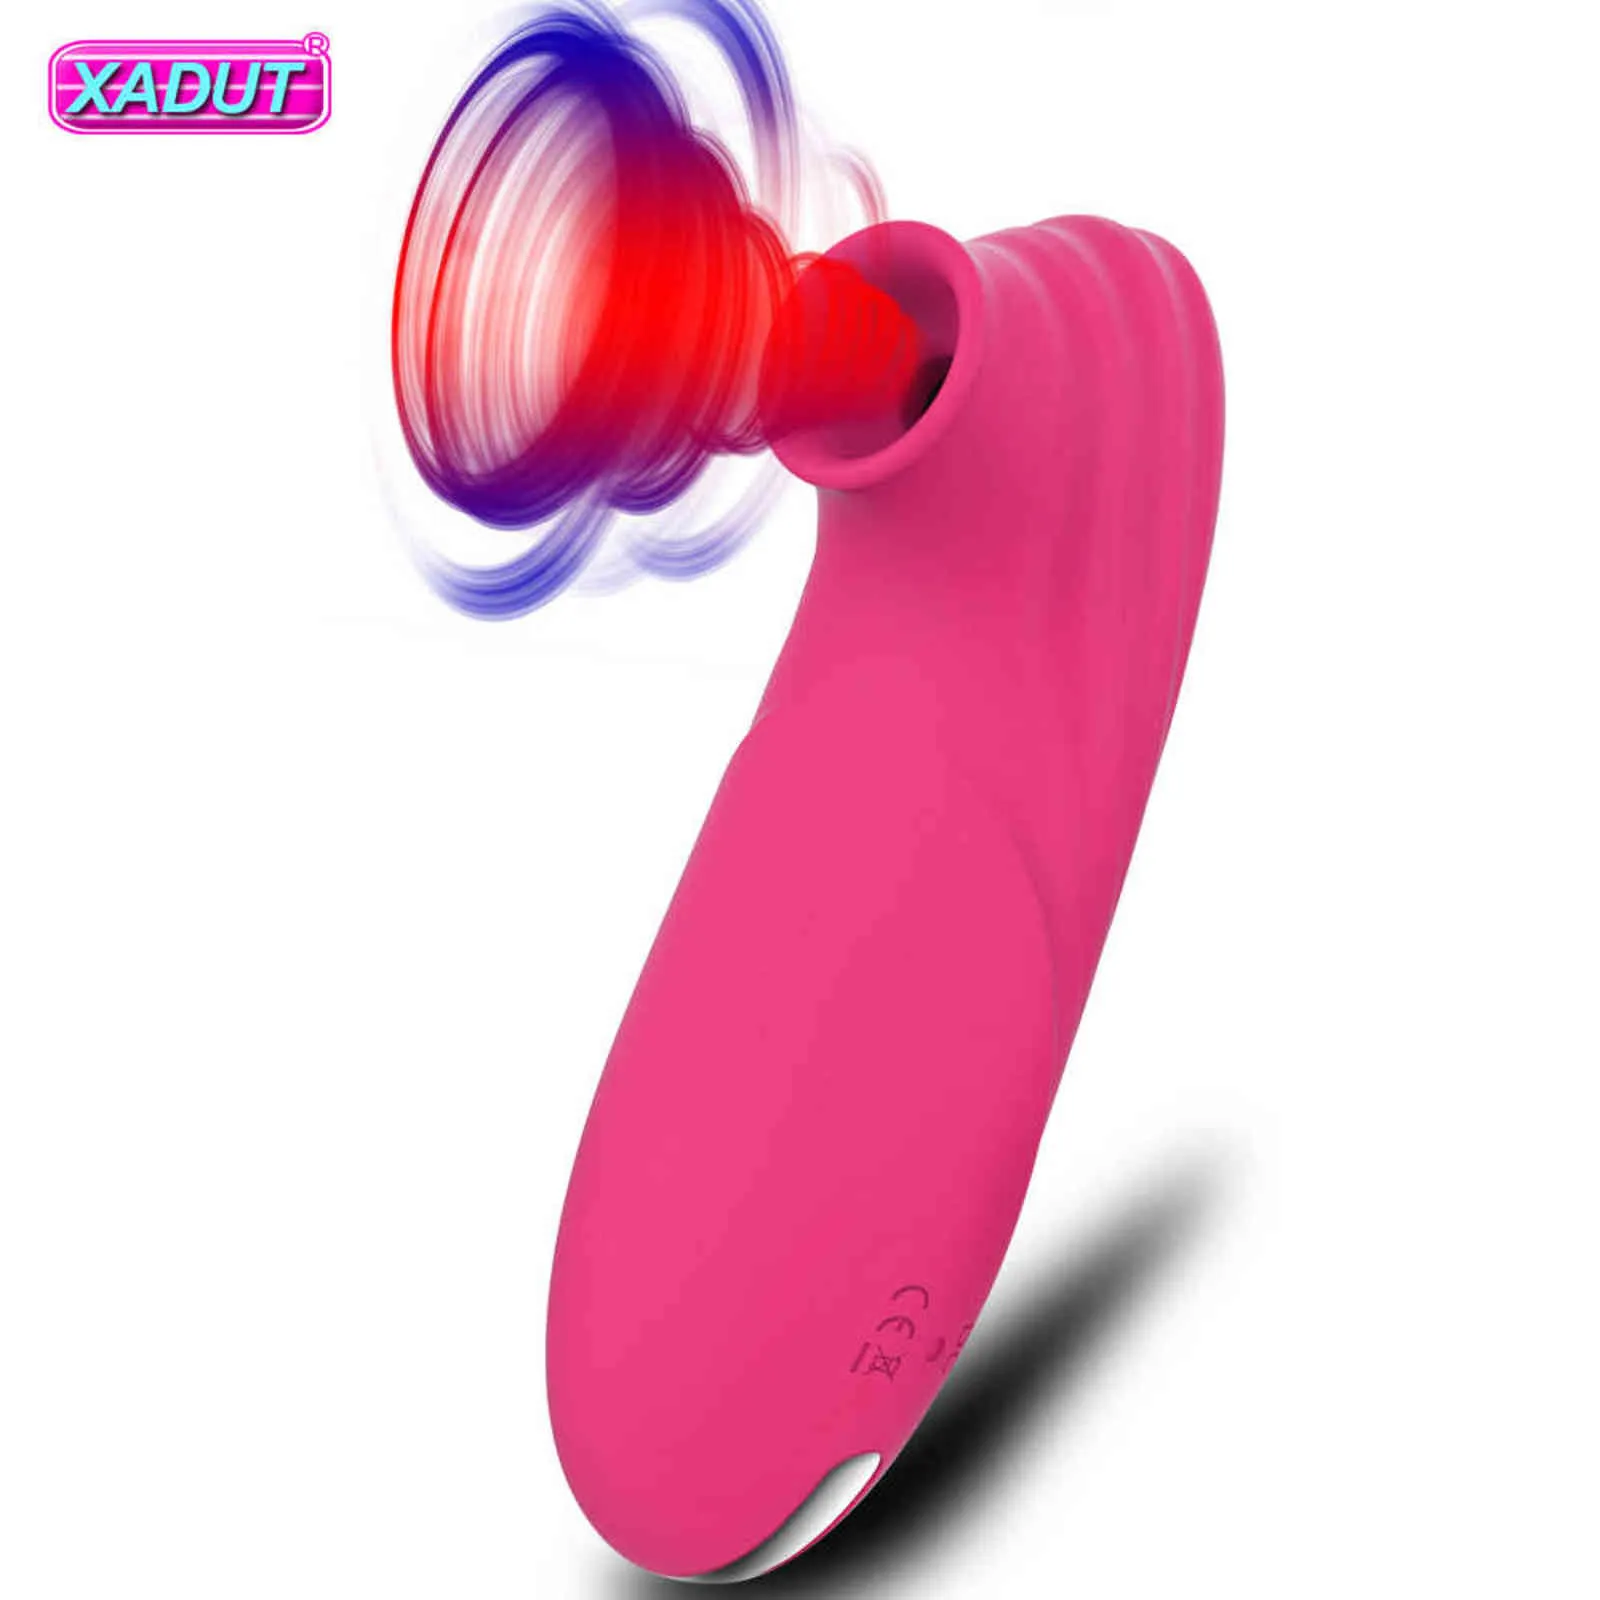 NXY Vibradores Clit Sucker Vibrator Sex Toys for Women Mamilos Chupando Boquete Clitóris Estimulador a Vácuo Adulto 1119